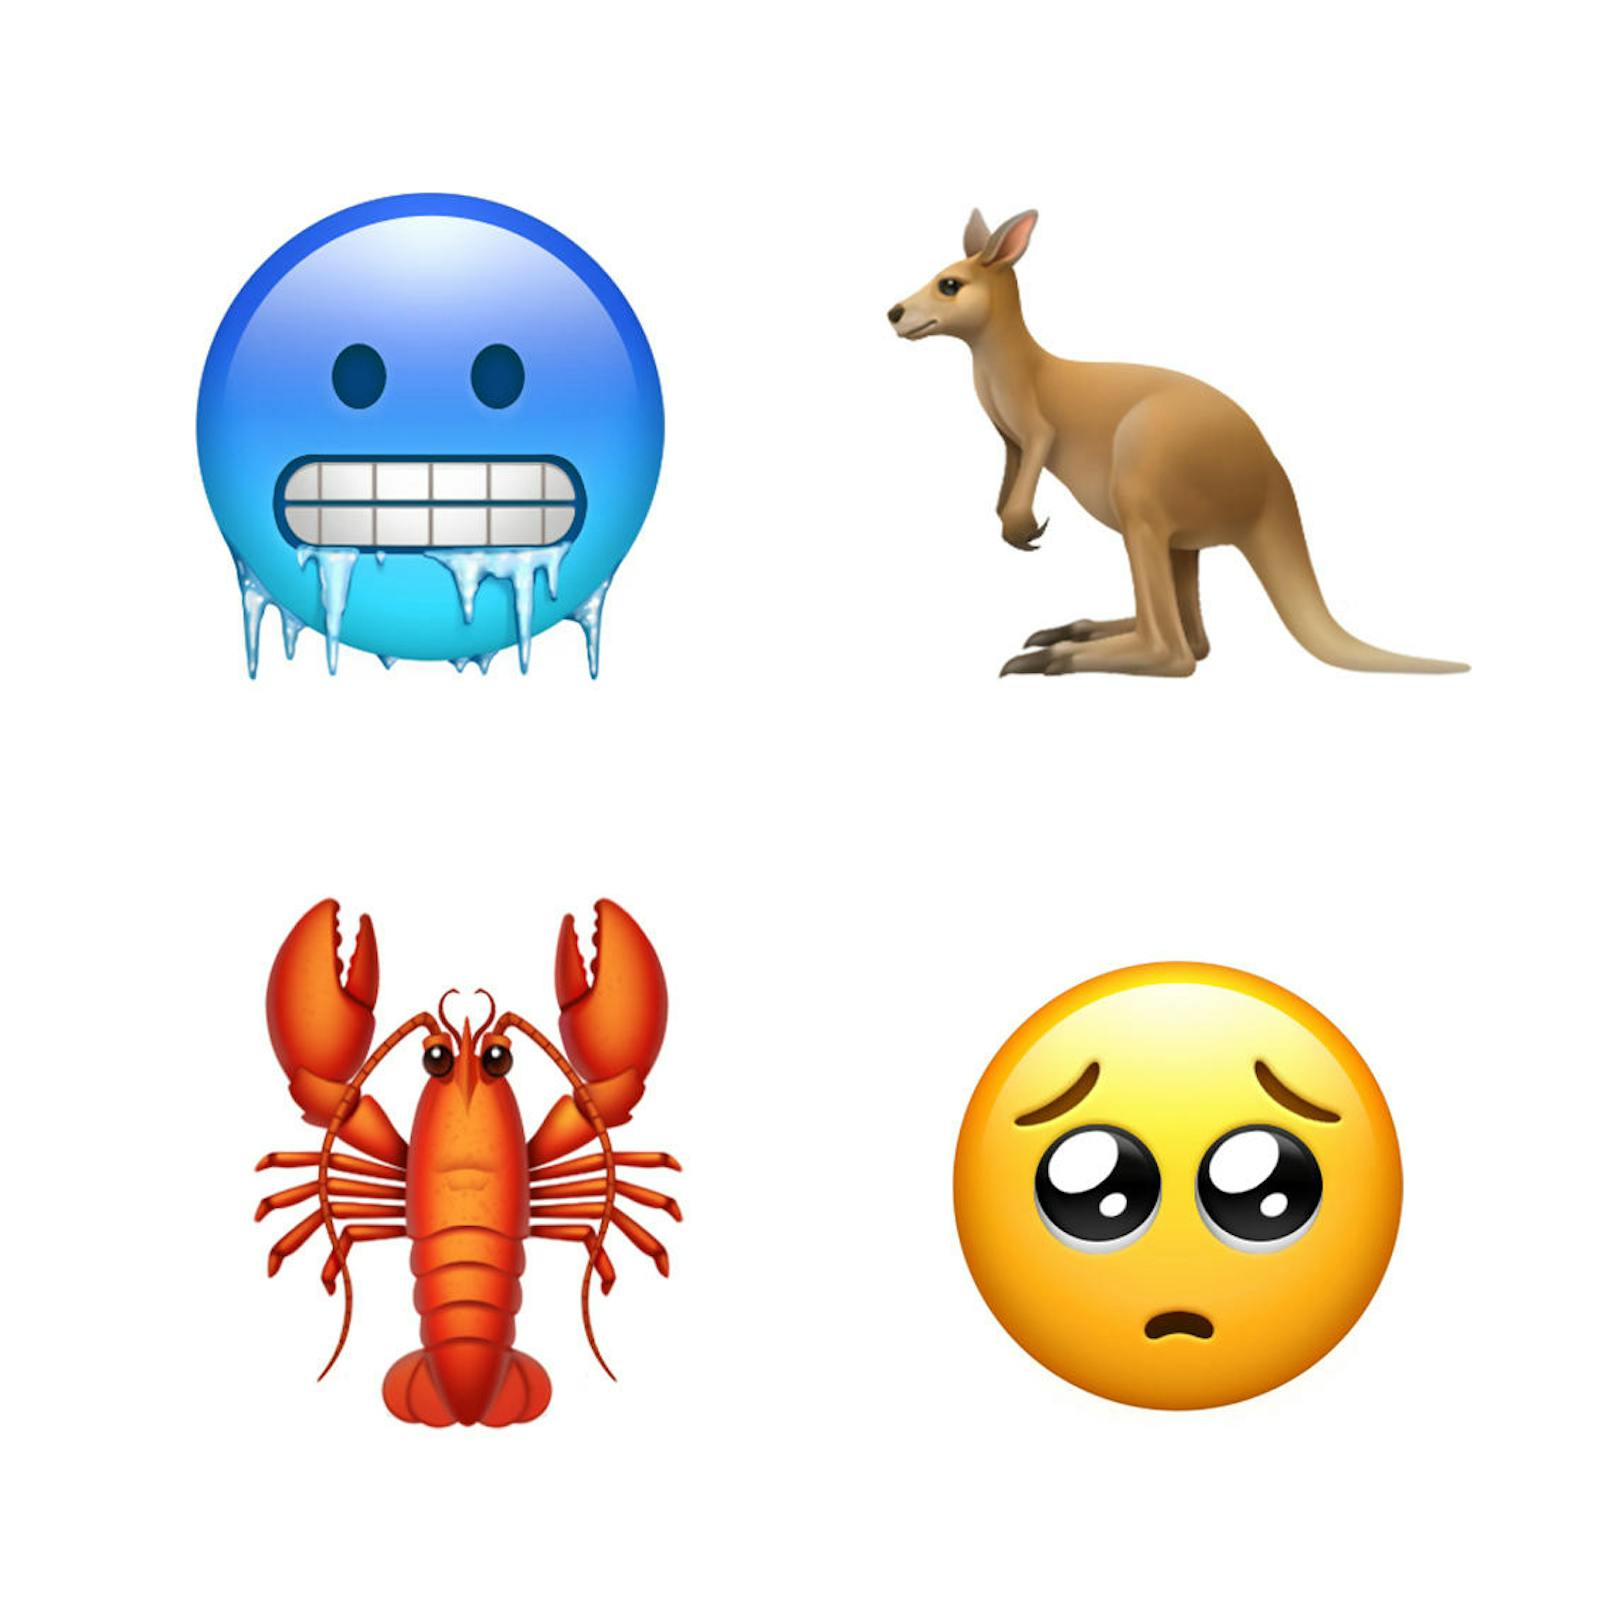 Das sind die neuen Emojis, die Apple mit dem iOS-Update 12.1 einführt. 